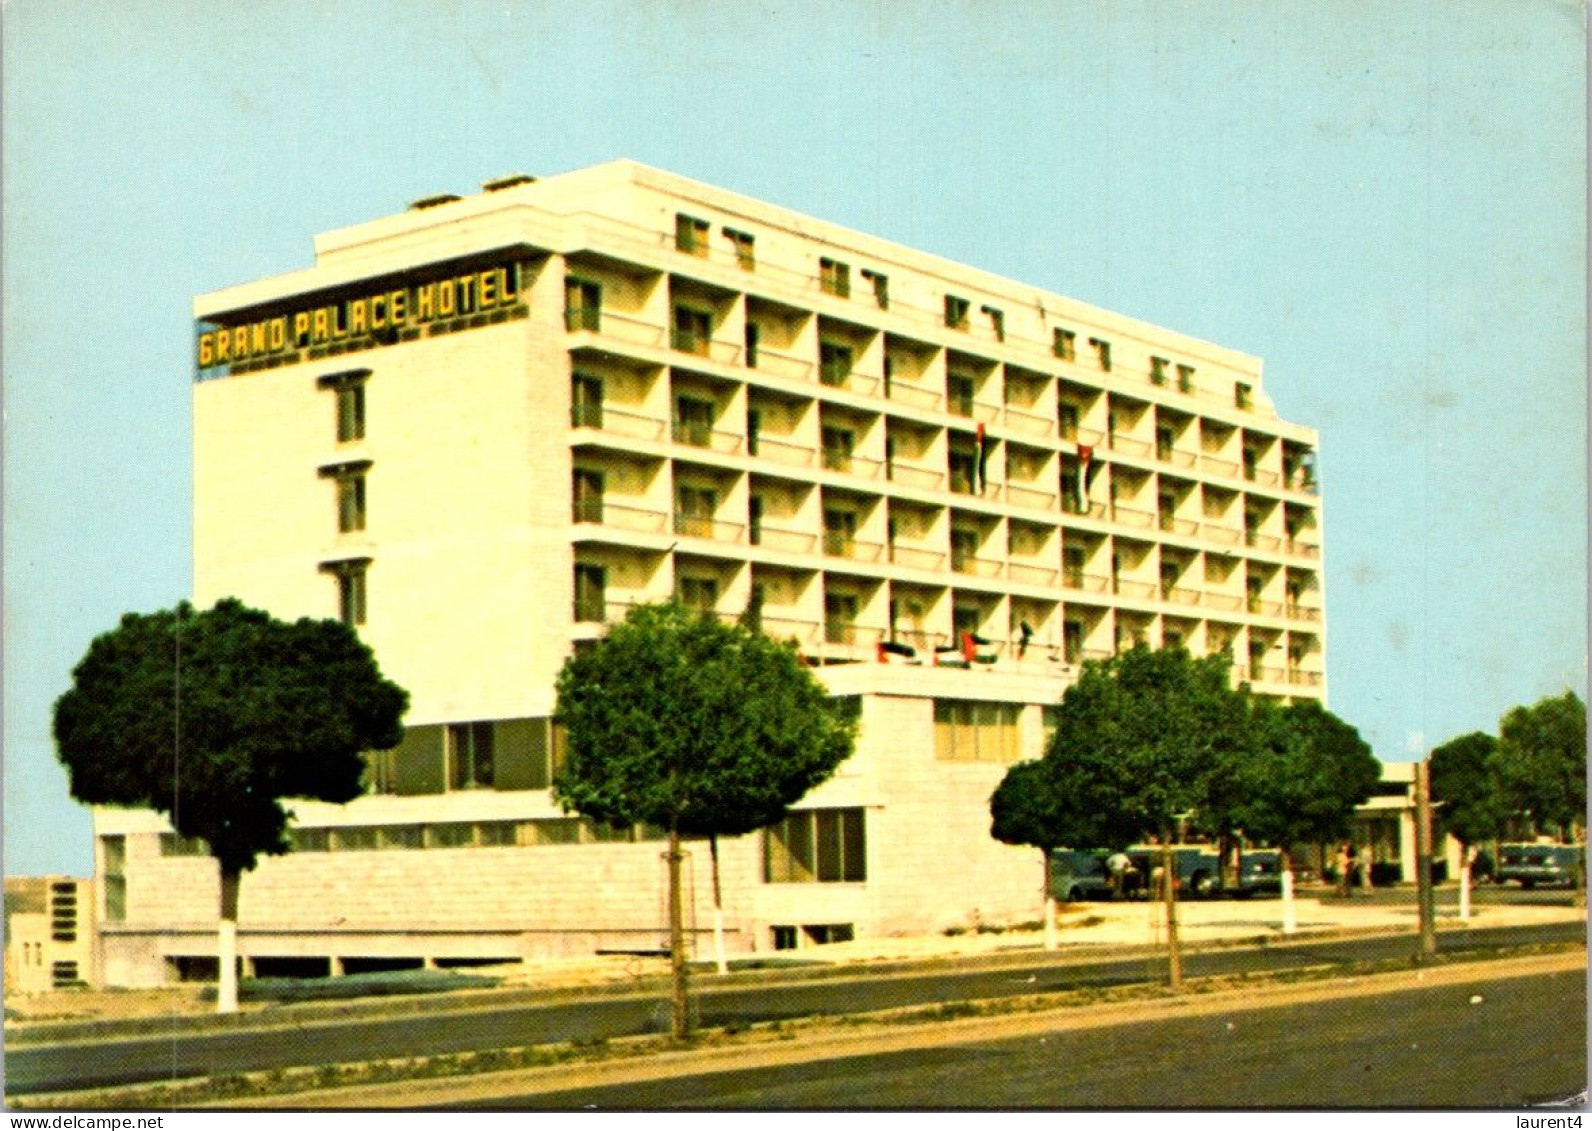 9-12-2023 (1 W 41) Jordan - Grand Palace Hotel In Amman - Jordan